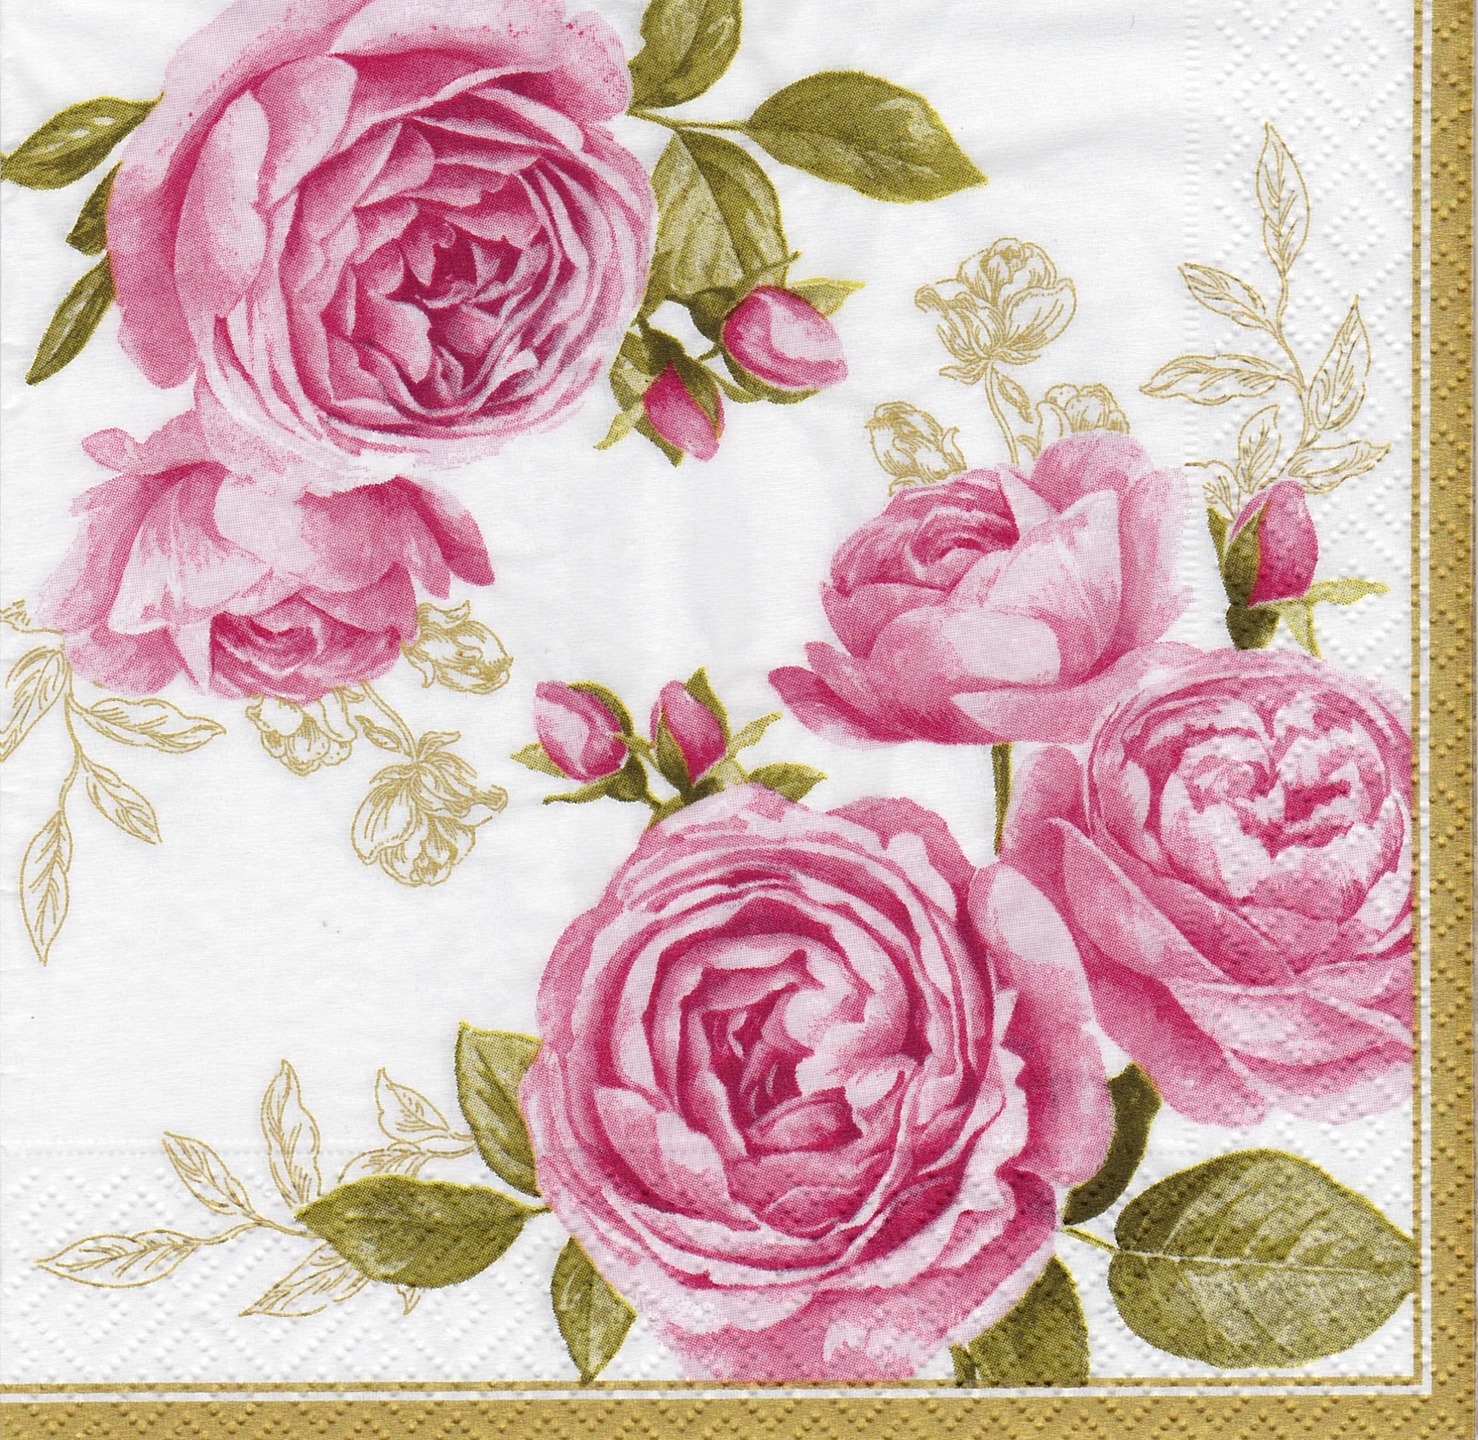 Serviette papier rose et bouton de rose bordure dorée - Un grand marché